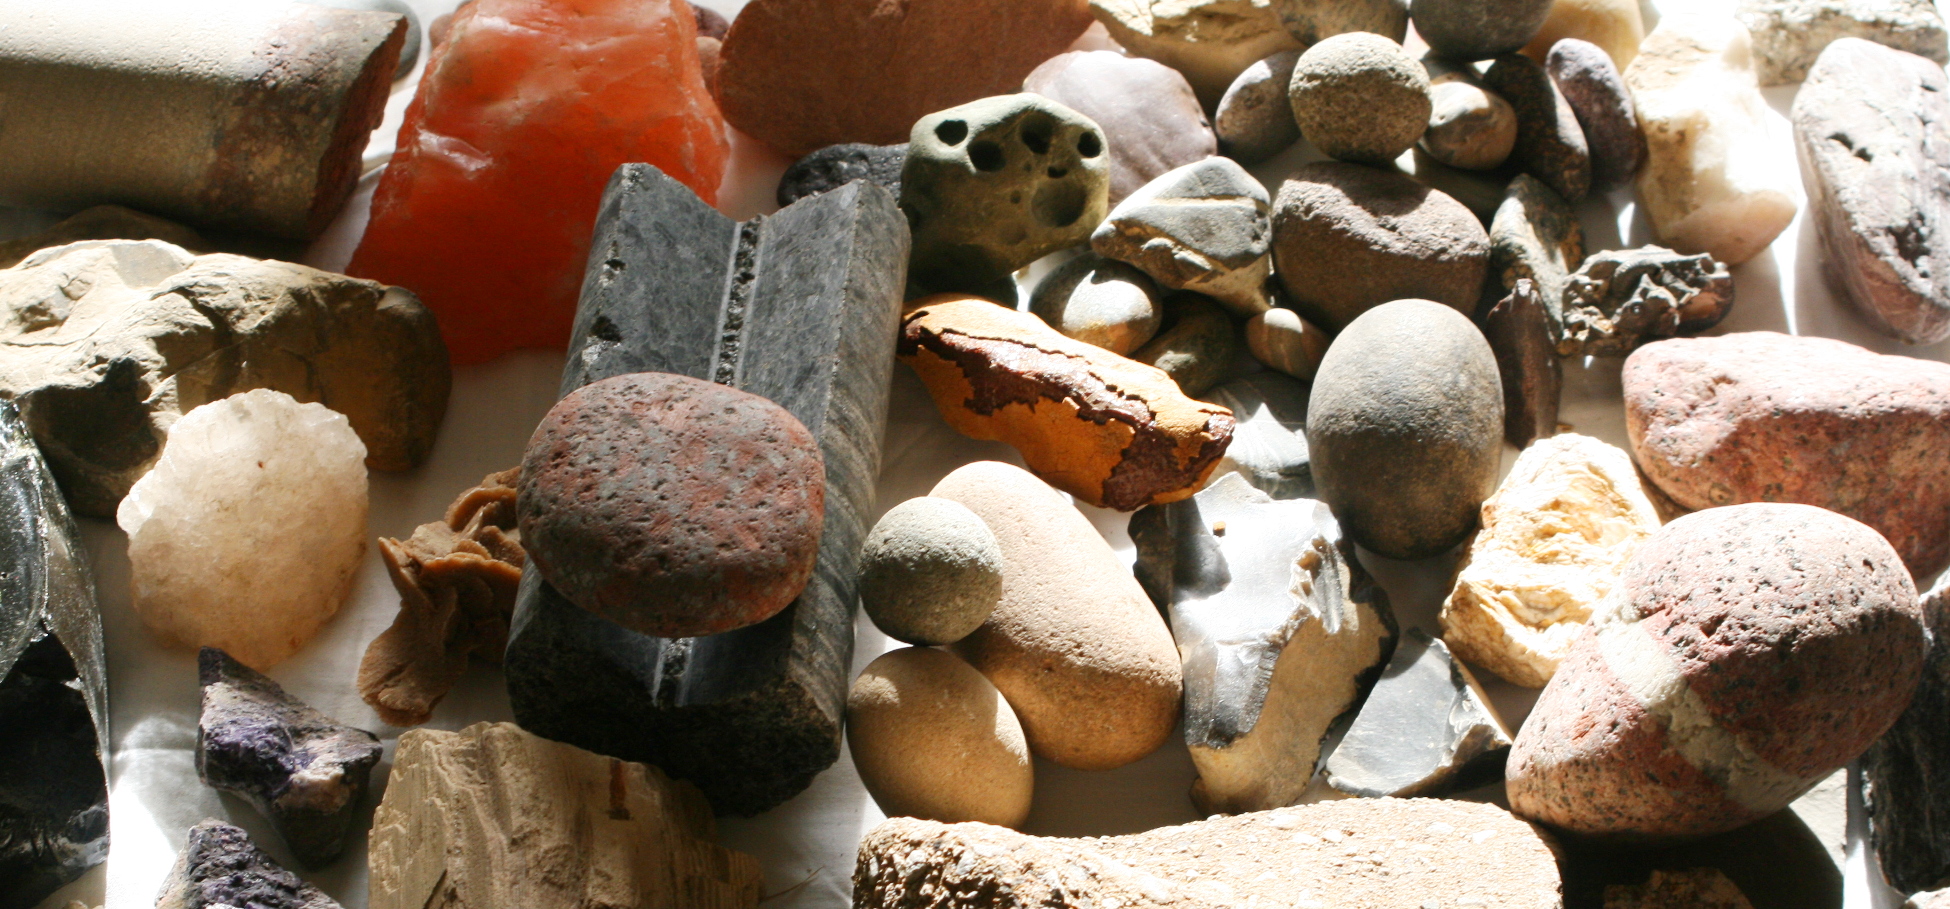 Zwykłe polne kamienie oraz piękne minerały. Na tej wystawie każdy eksponat ma swoją wagę i historię